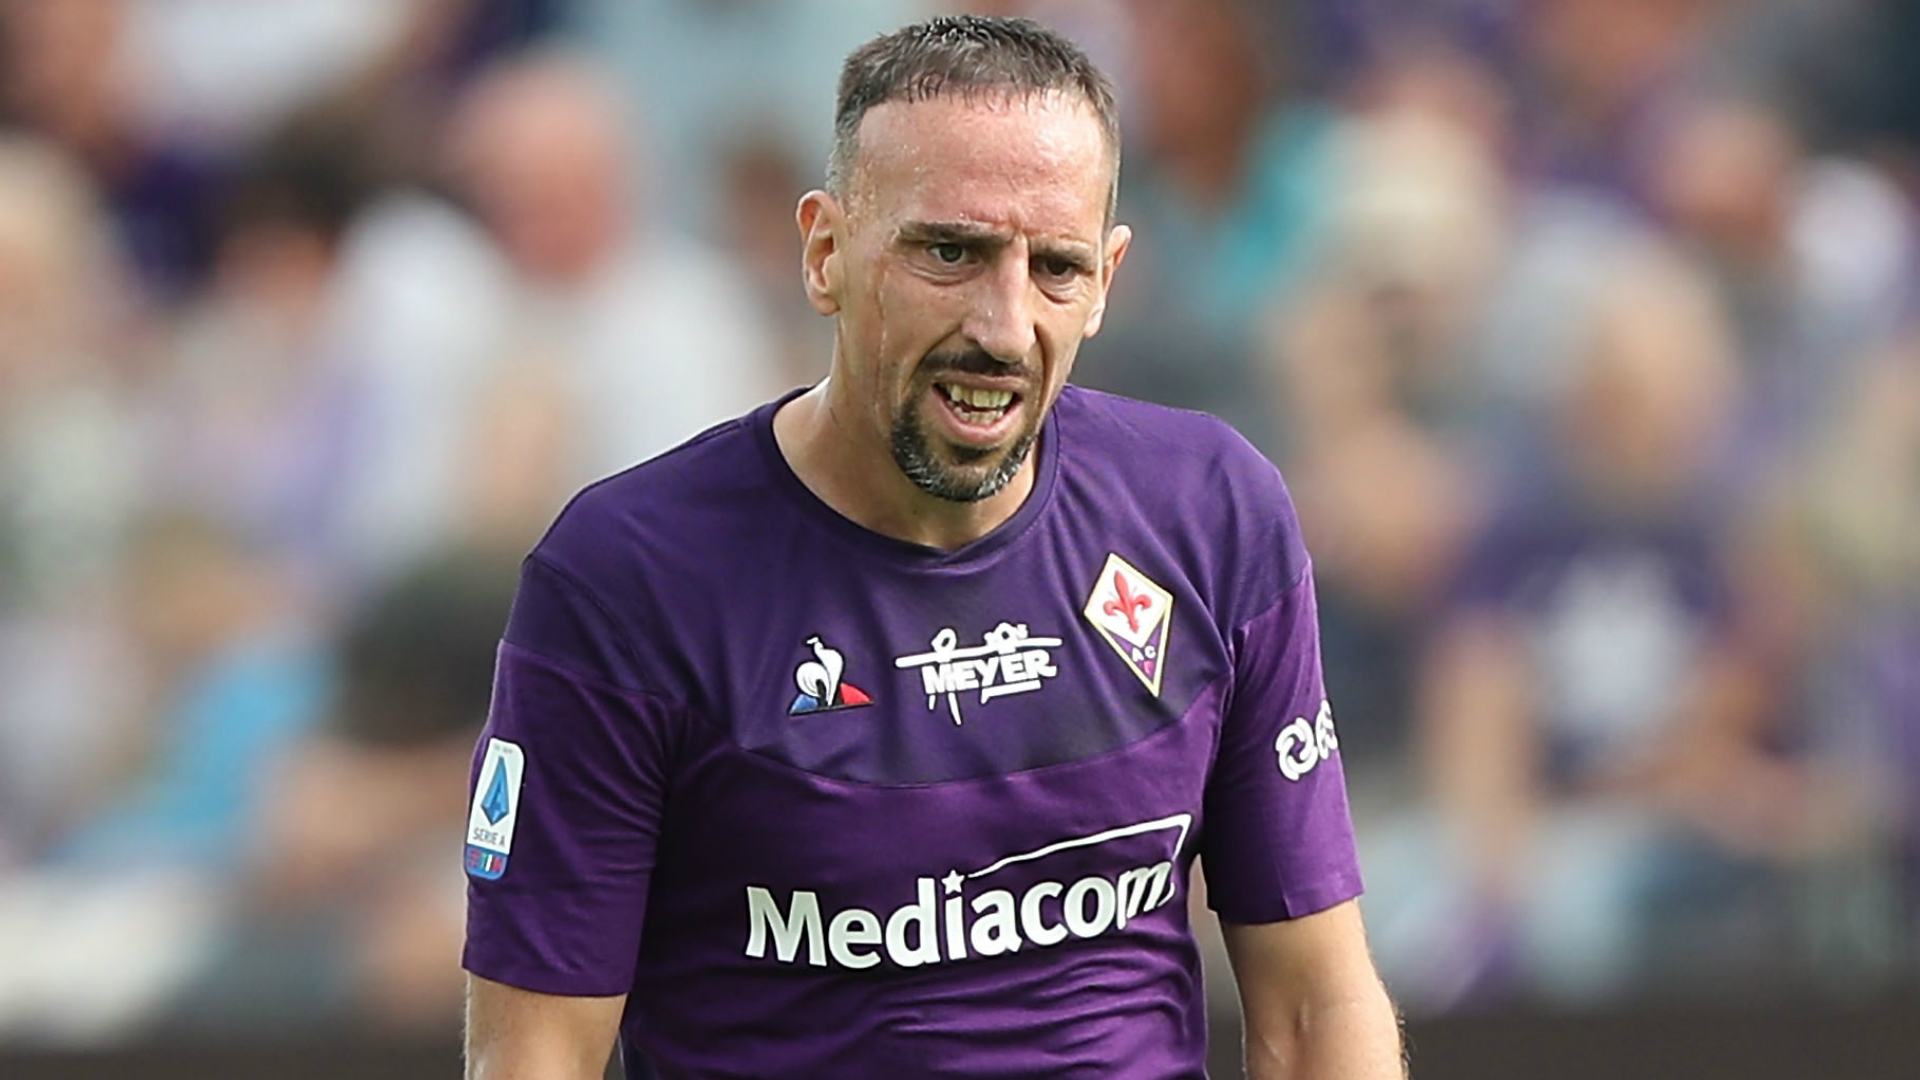 Cambriolé, Ribery pourrait quitter l’Italie plus tôt que prévu